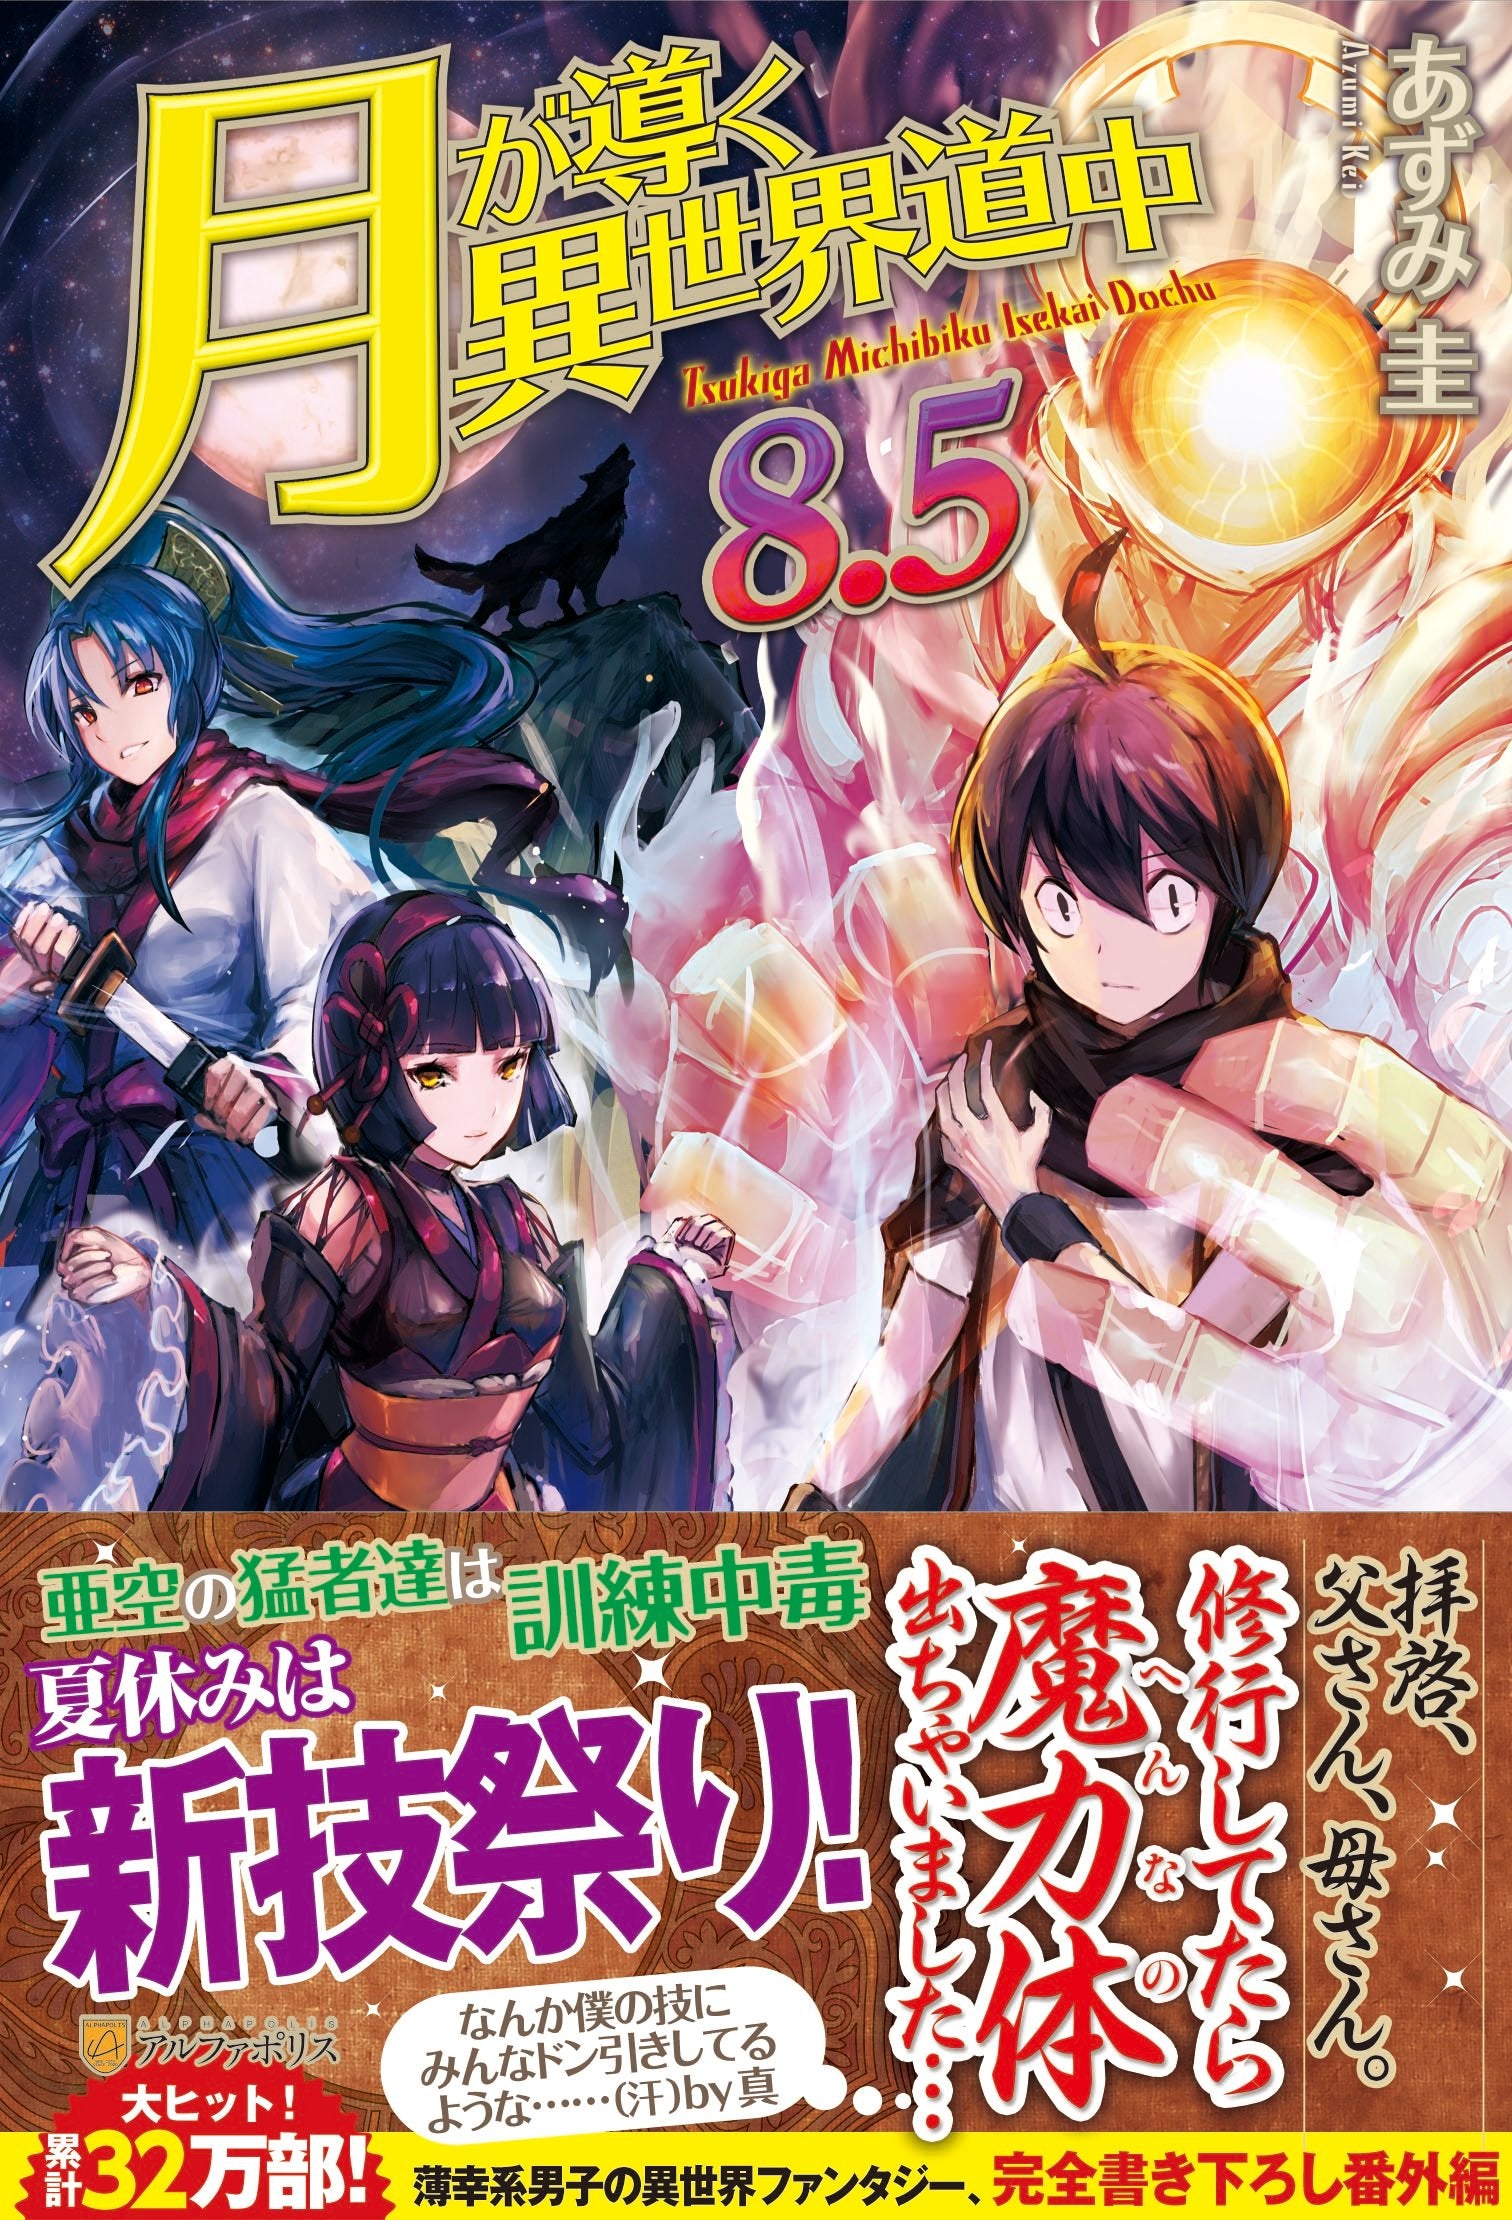 Light Novel Volume 14/Gallery  Tsuki ga Michibiku Isekai Douchuu